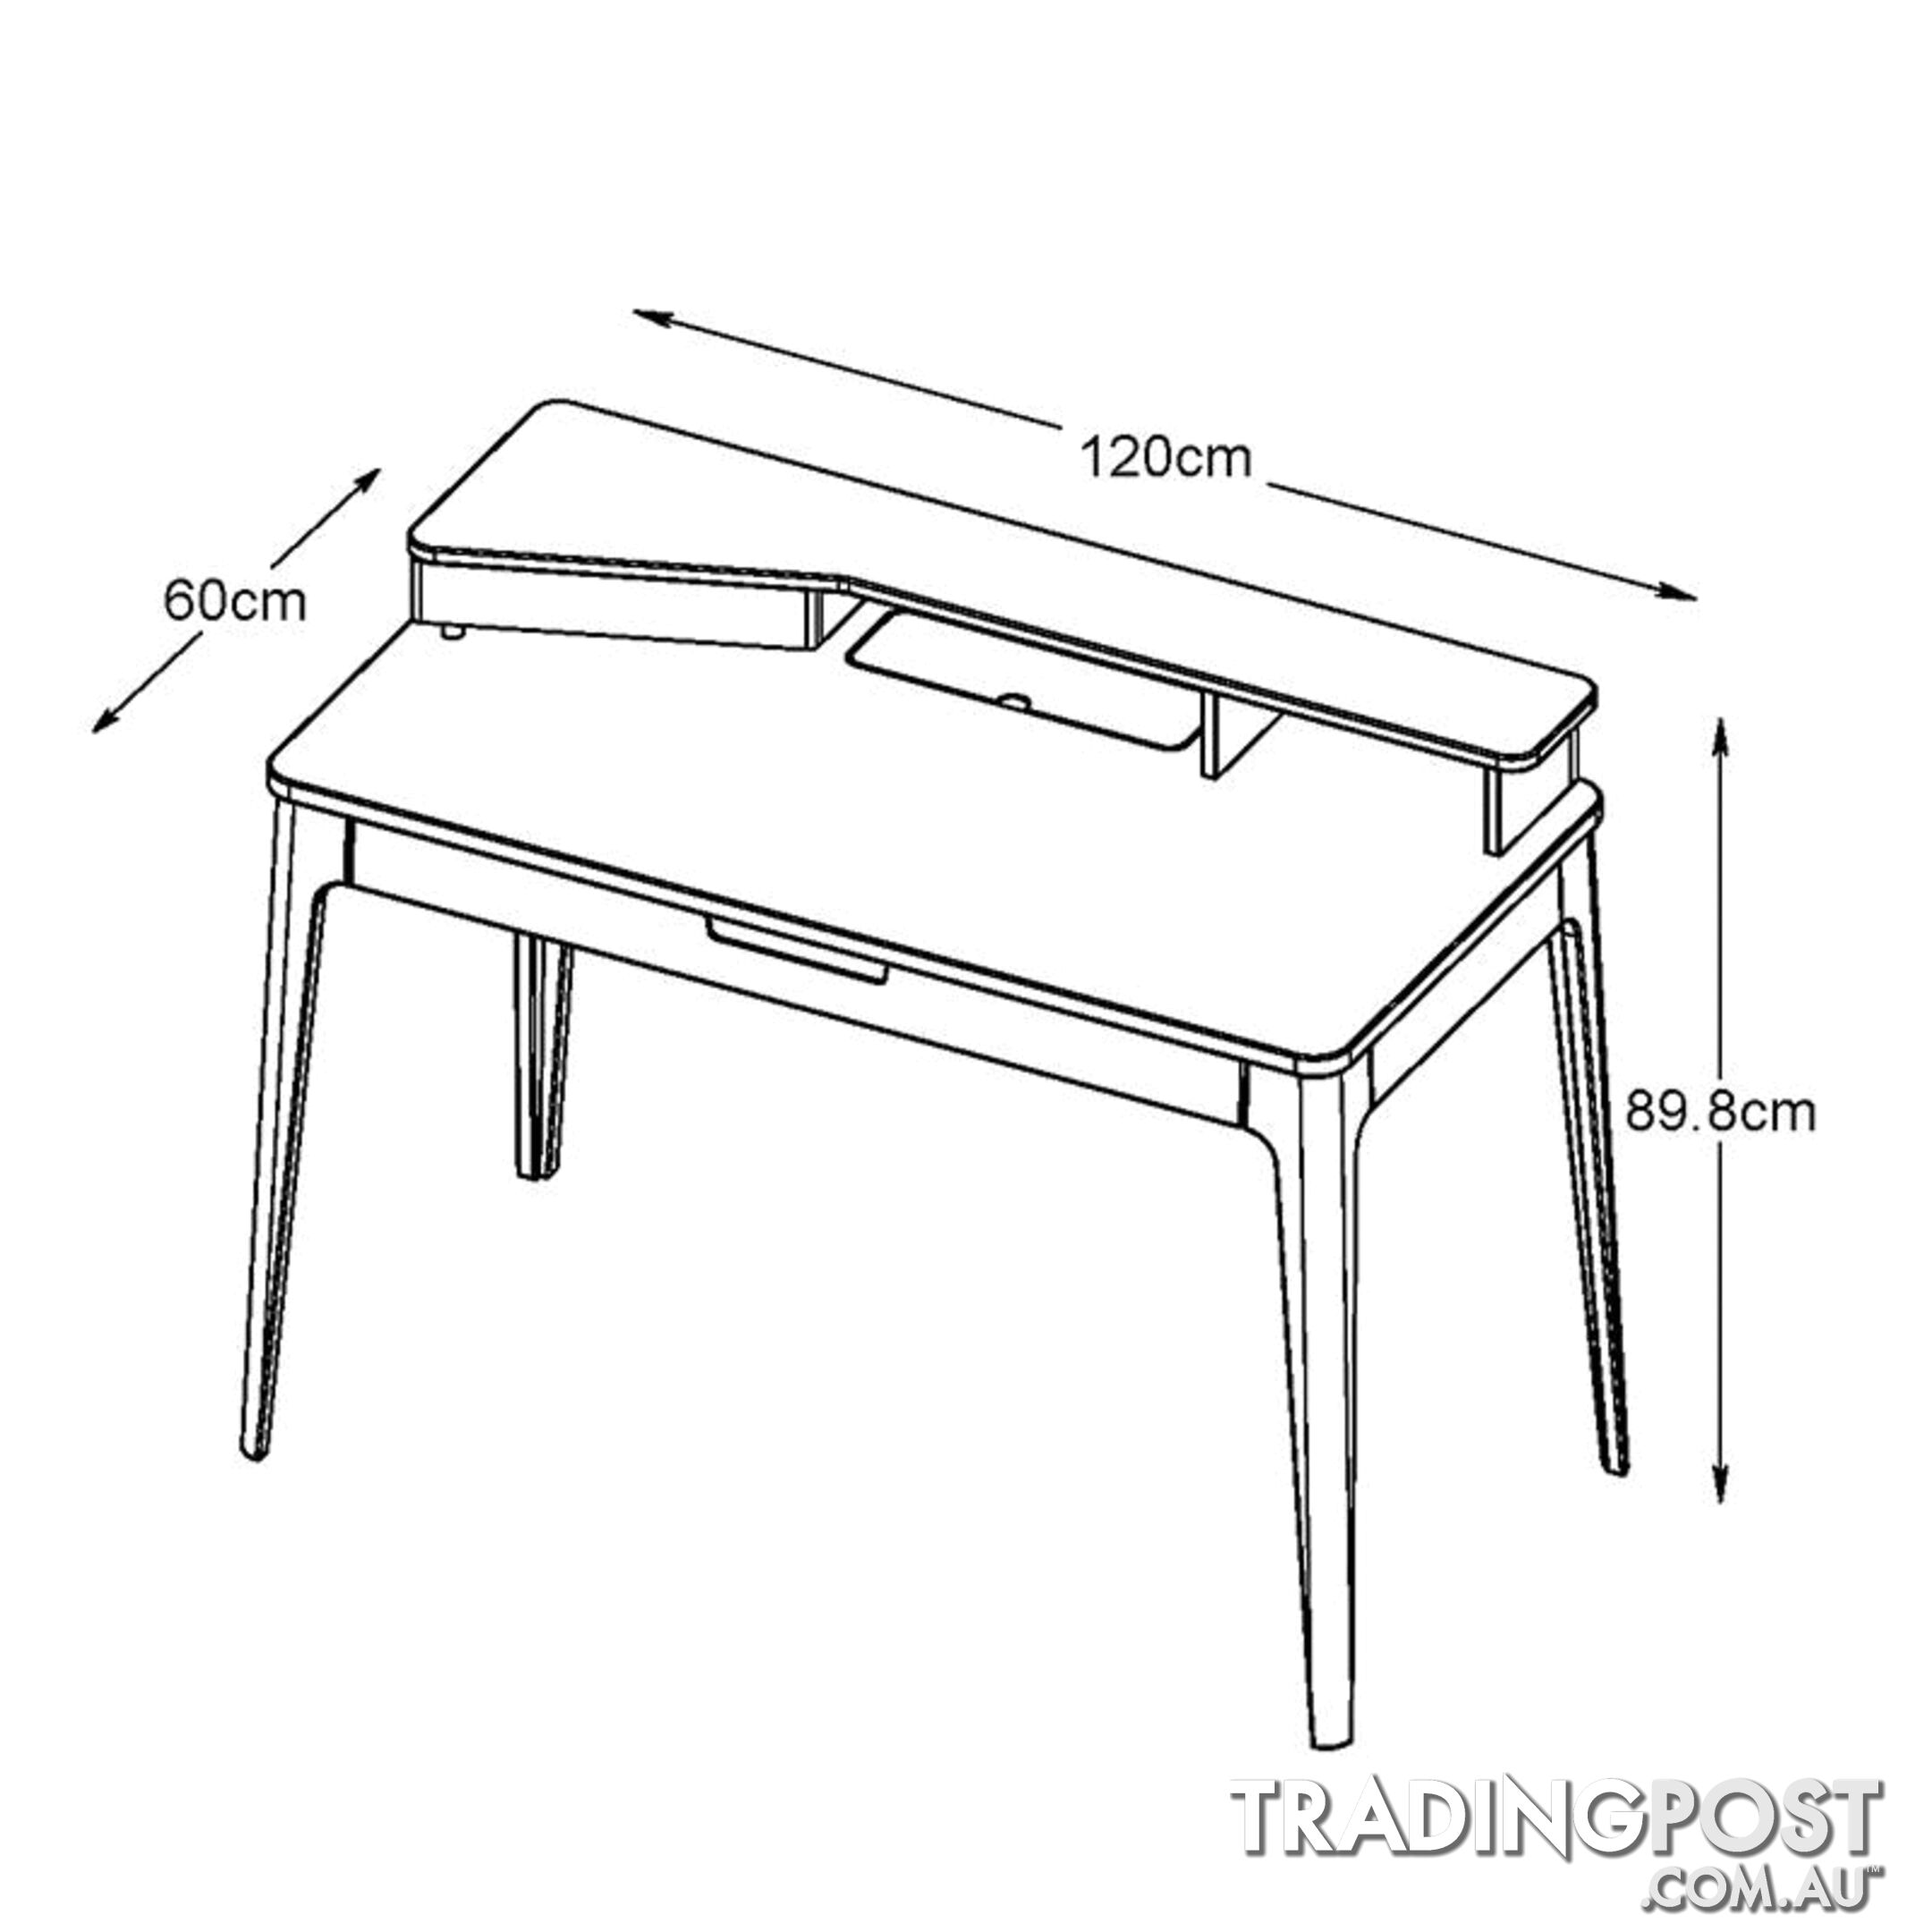 SIENNA Study Desk 120cm -  Natural & White - 36392231 - 5704745073552